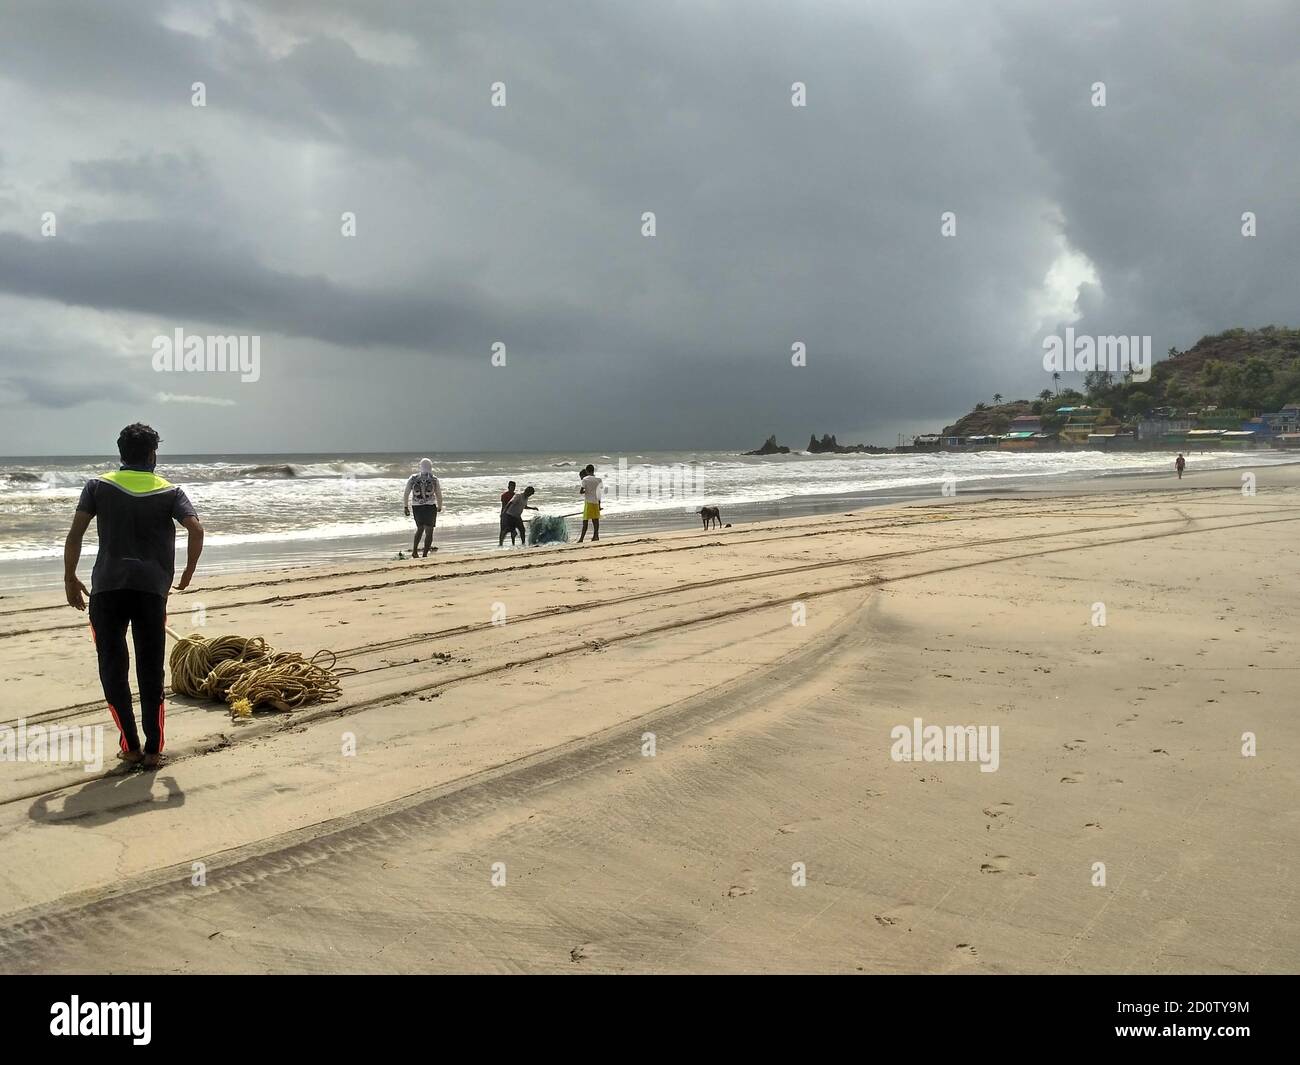 Arambol Beach, Goa, India - June 6, 2020: Fishermen gathering their fishing nets during the monsoon season Stock Photo